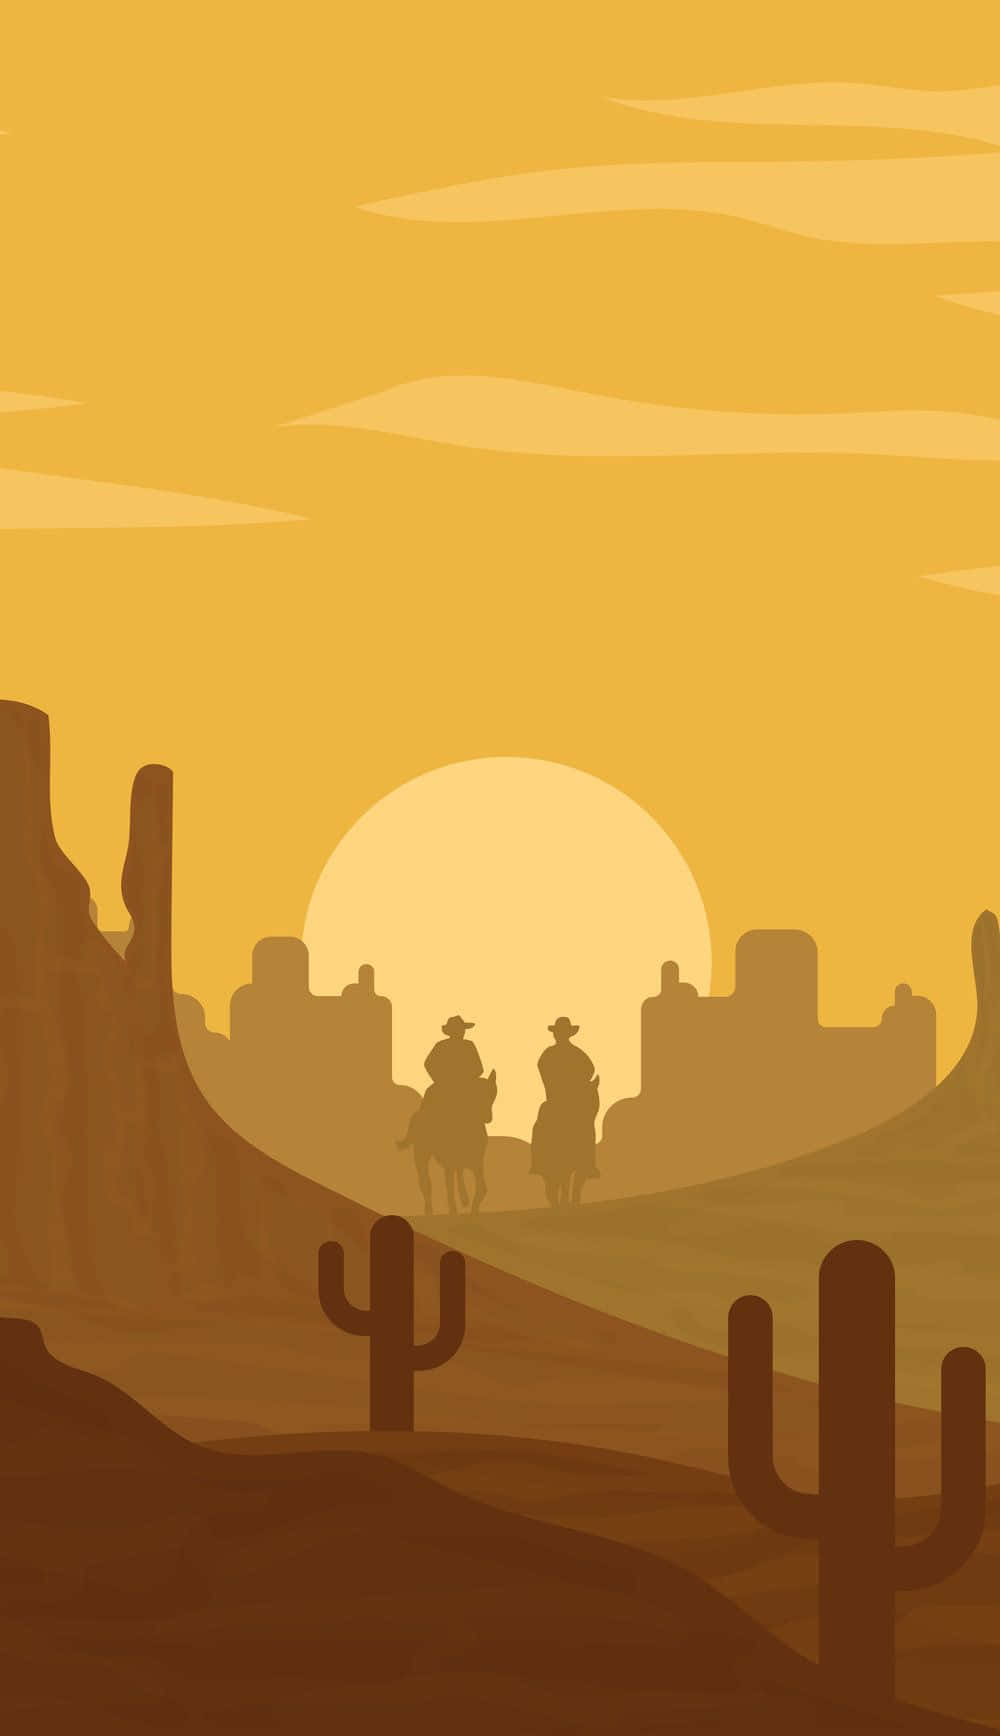 Dosvaqueros Montando A Caballo En El Desierto. Fondo de pantalla